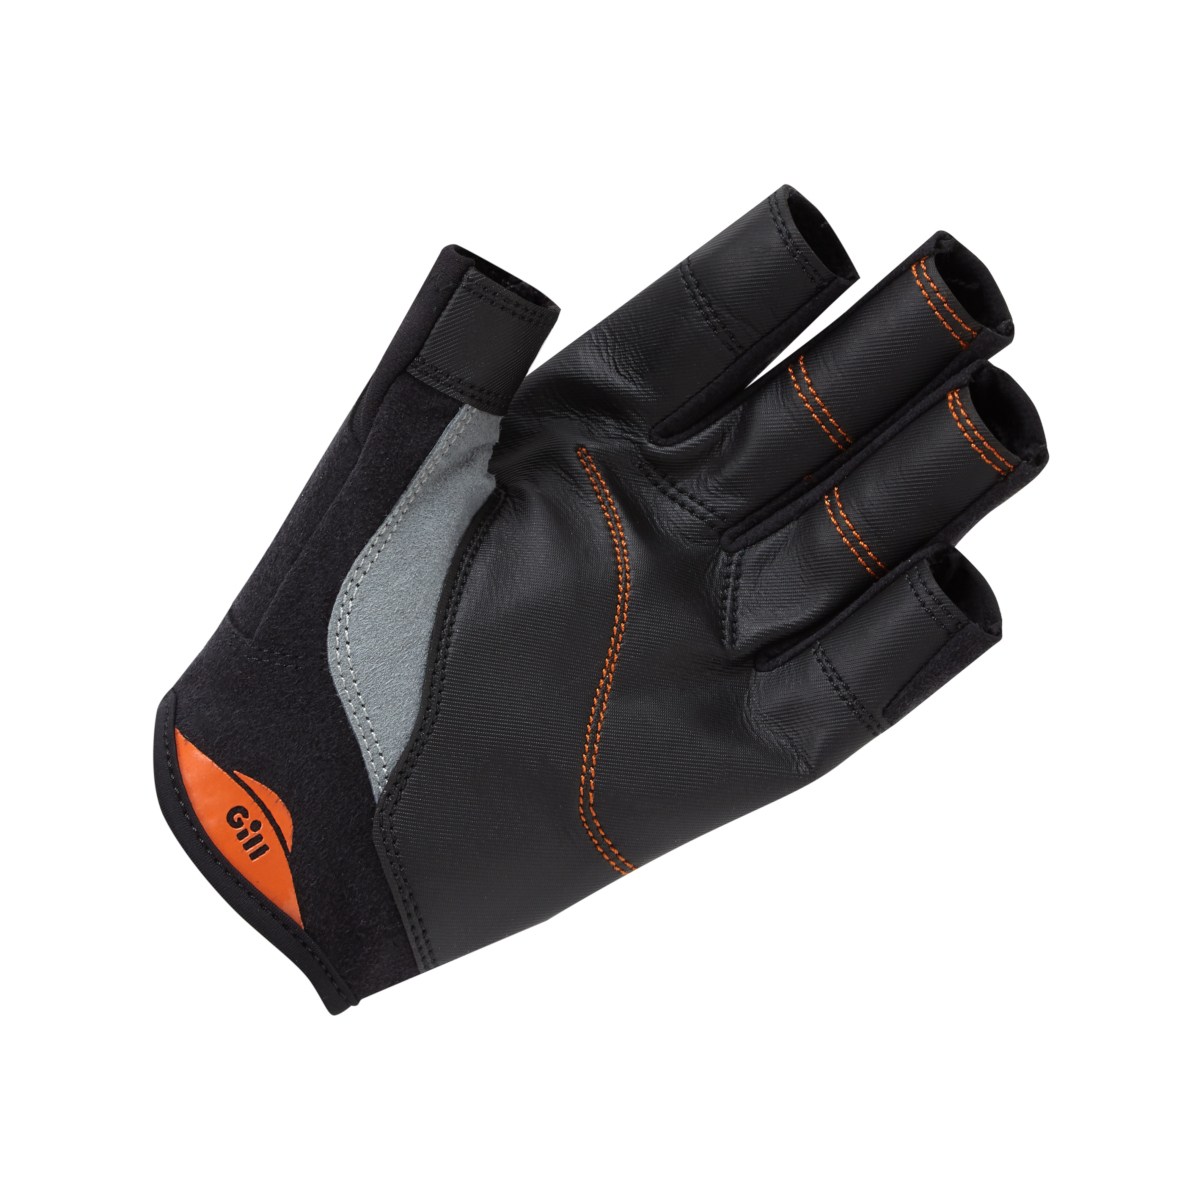 Gill Championship gants de voile à doigts courts - noir, taille XXL